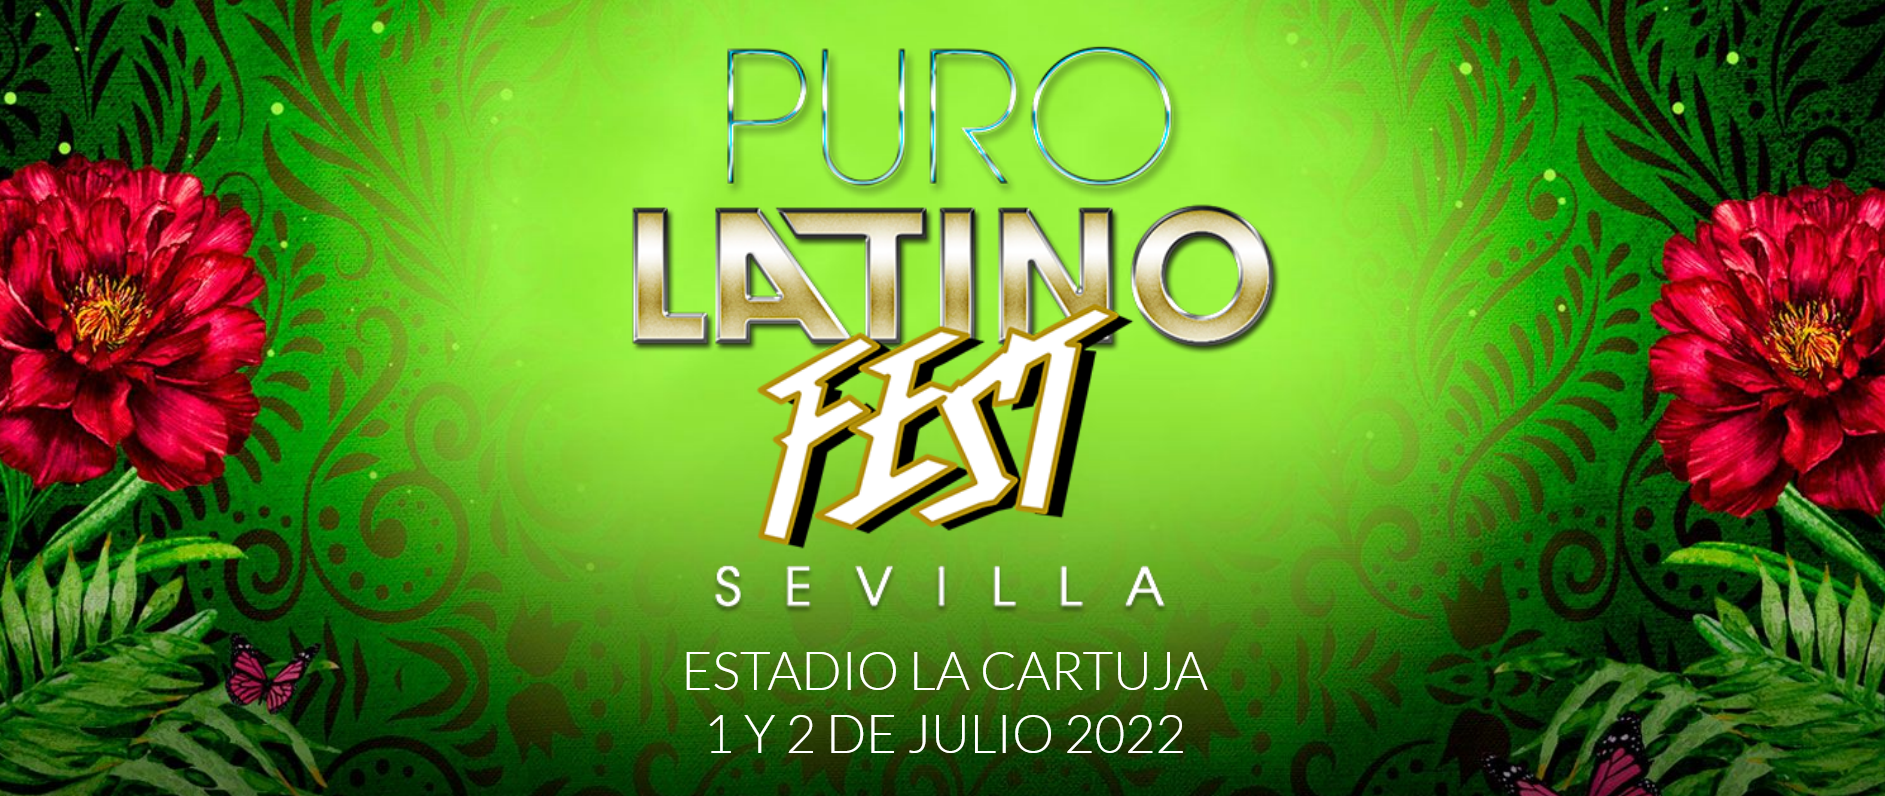 Puro Latino Fest - Sevilla